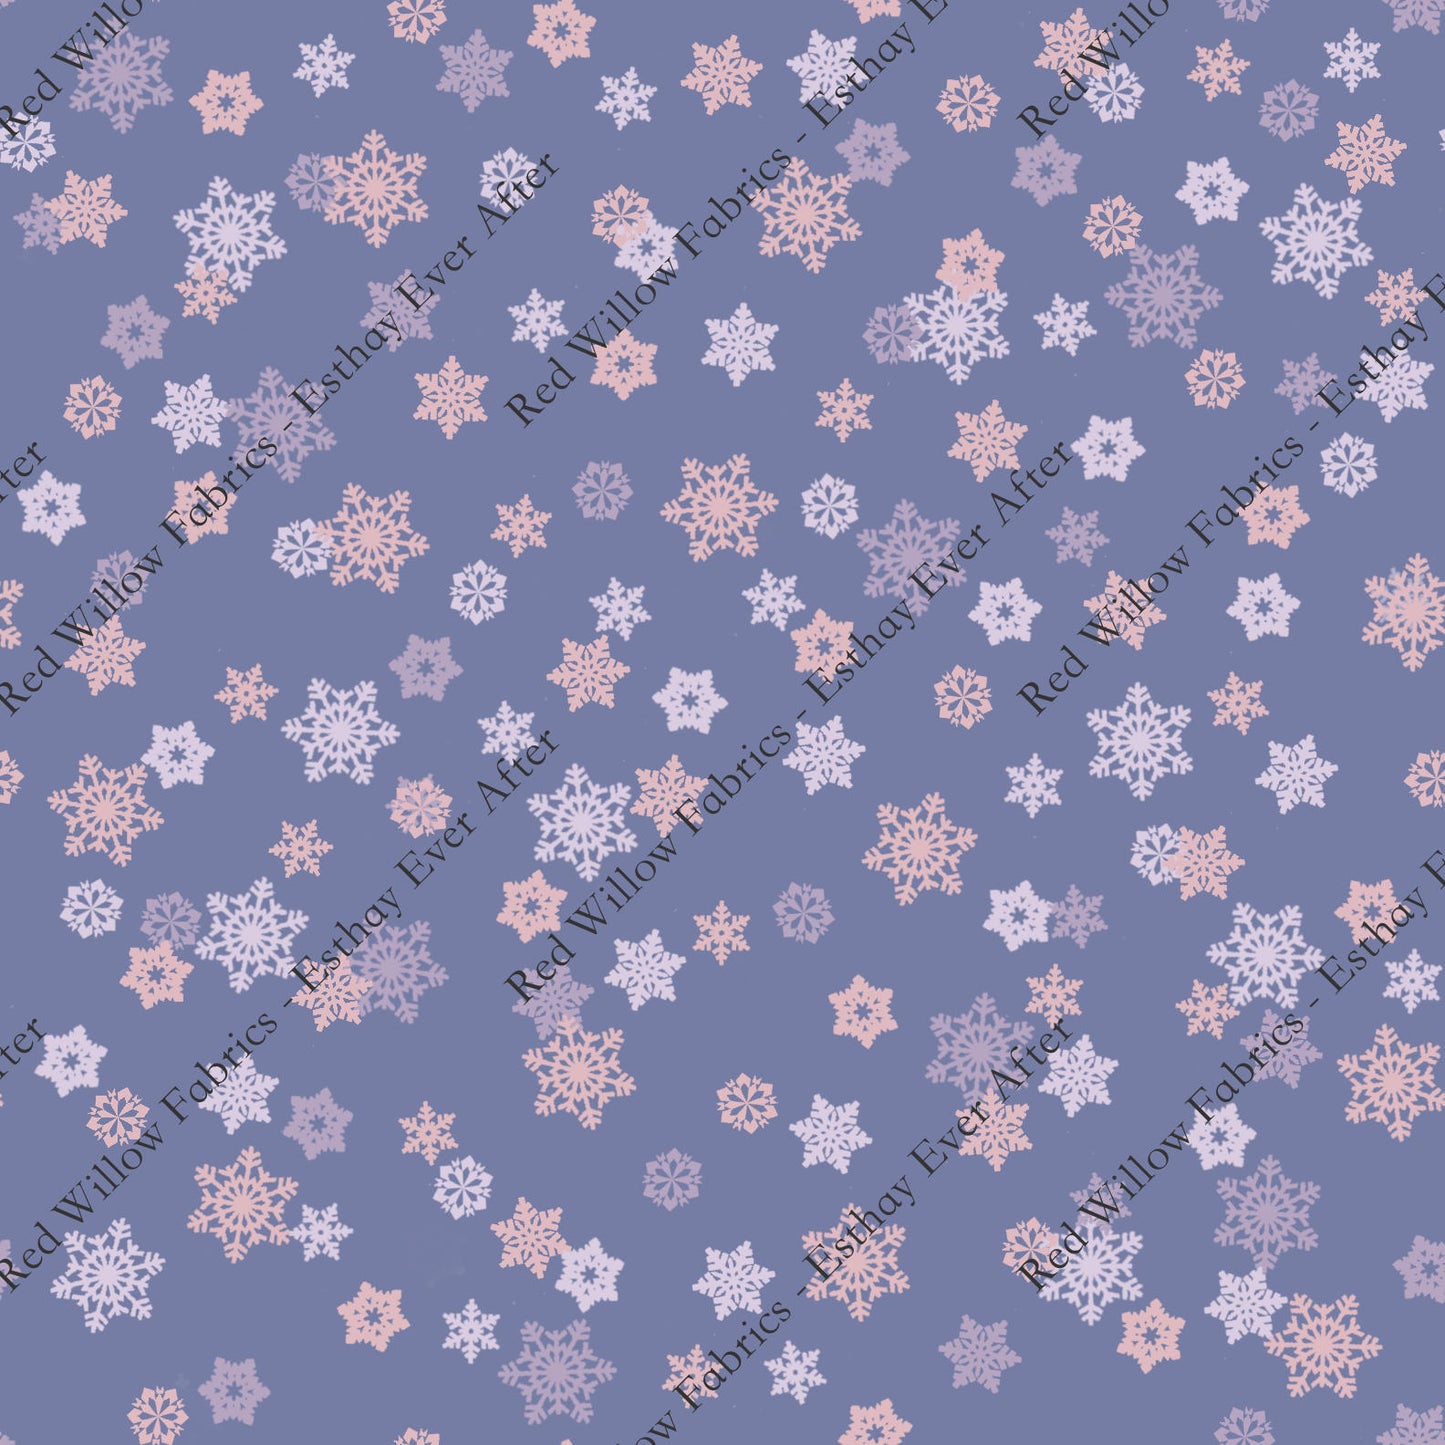 EEA - Snowflakes on Purple